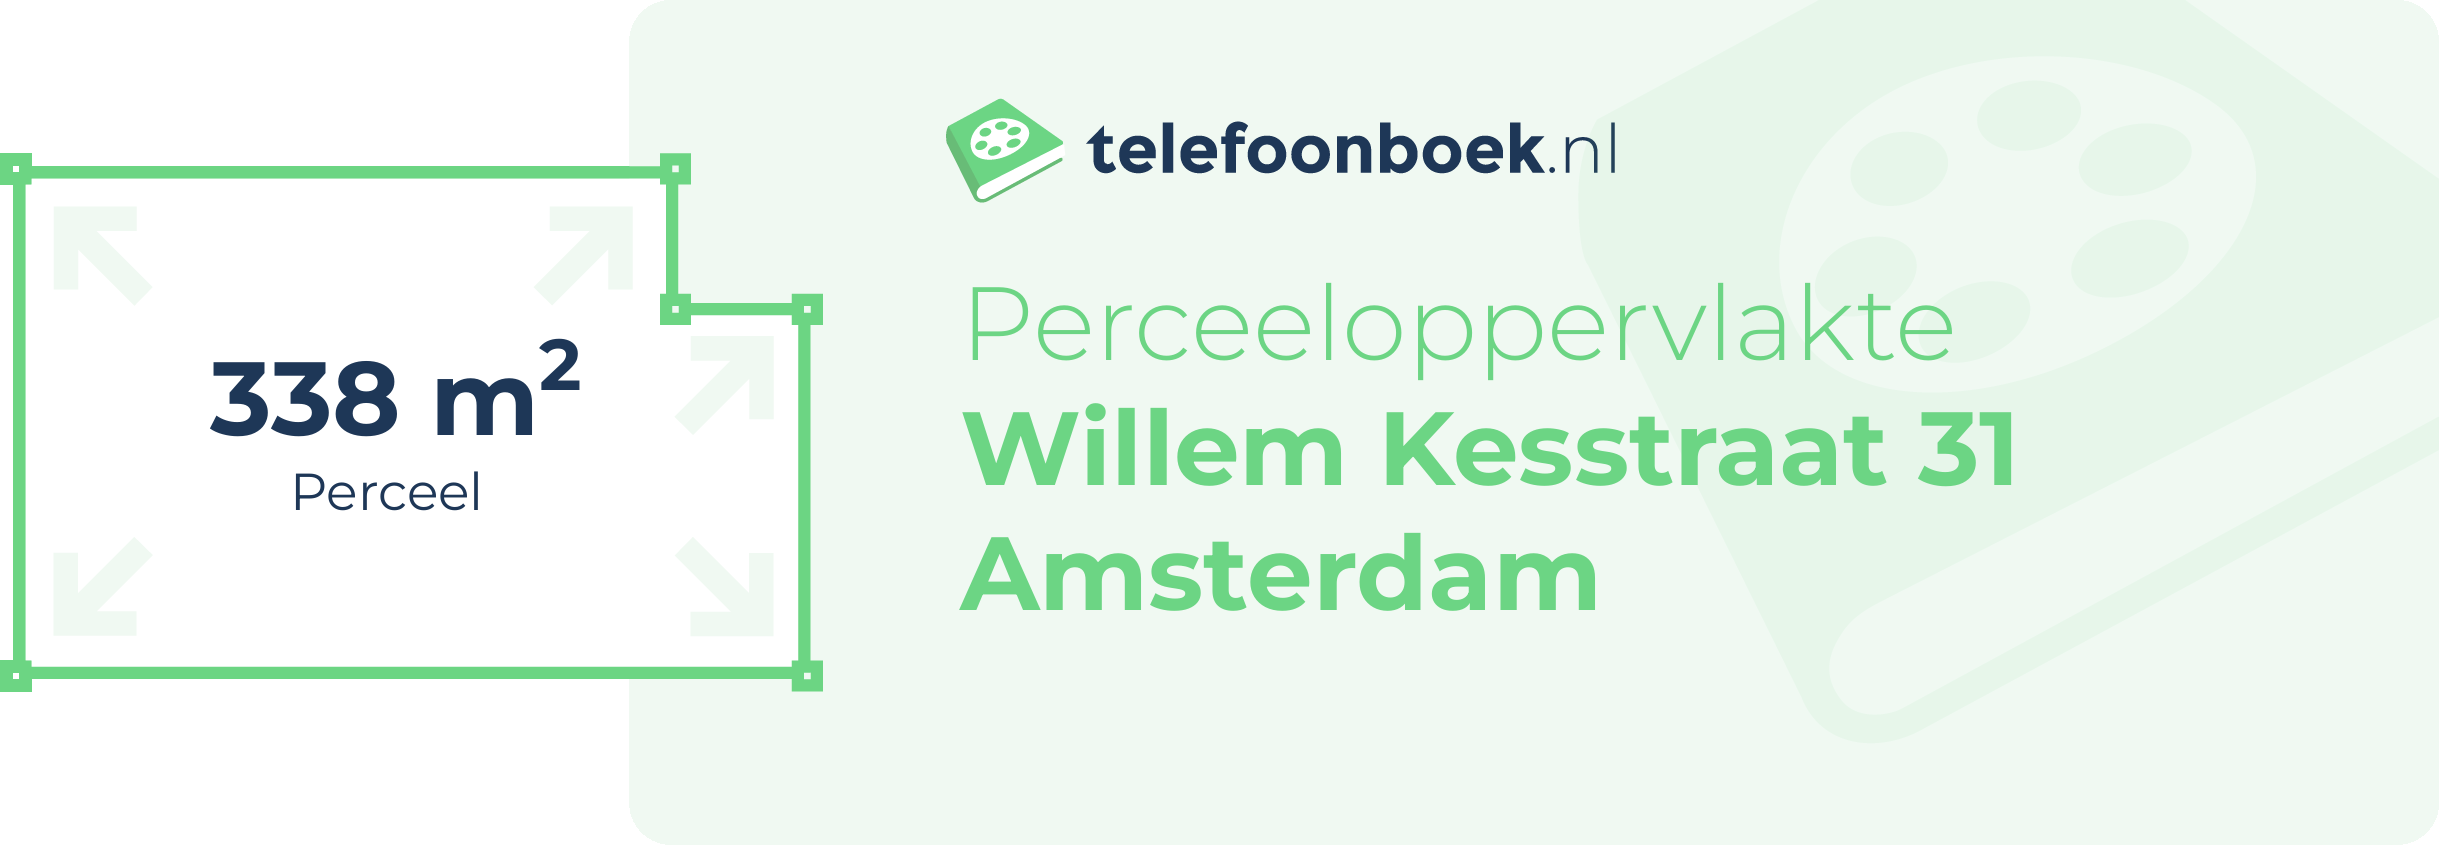 Perceeloppervlakte Willem Kesstraat 31 Amsterdam